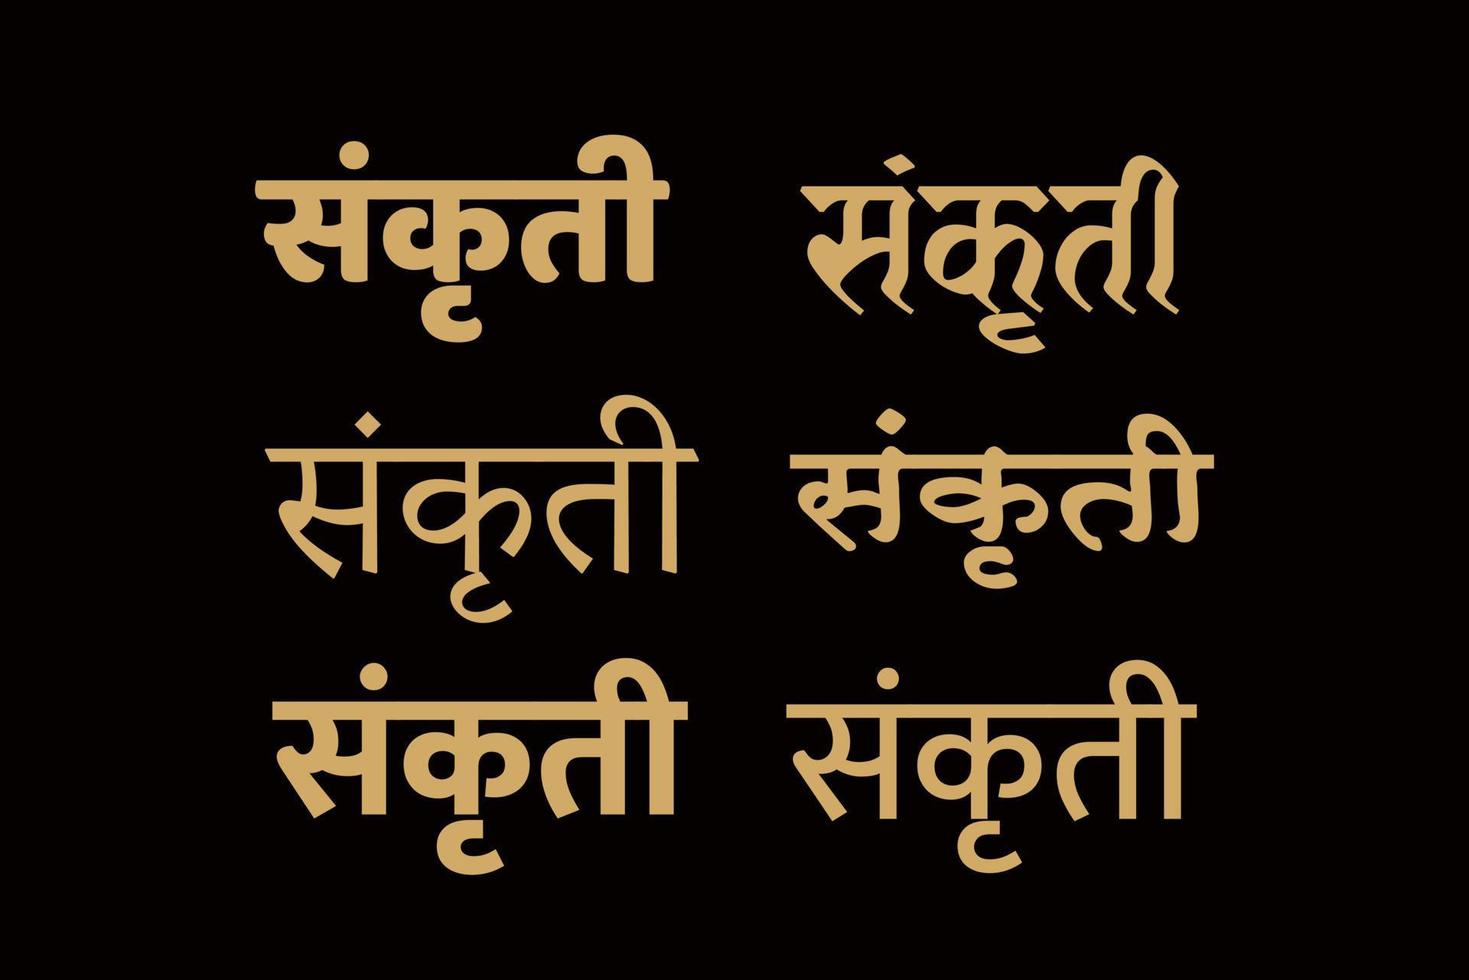 cultuur geschreven in Hindi belettering. sanskriet belettering in 6 verschillend lettertype. vector